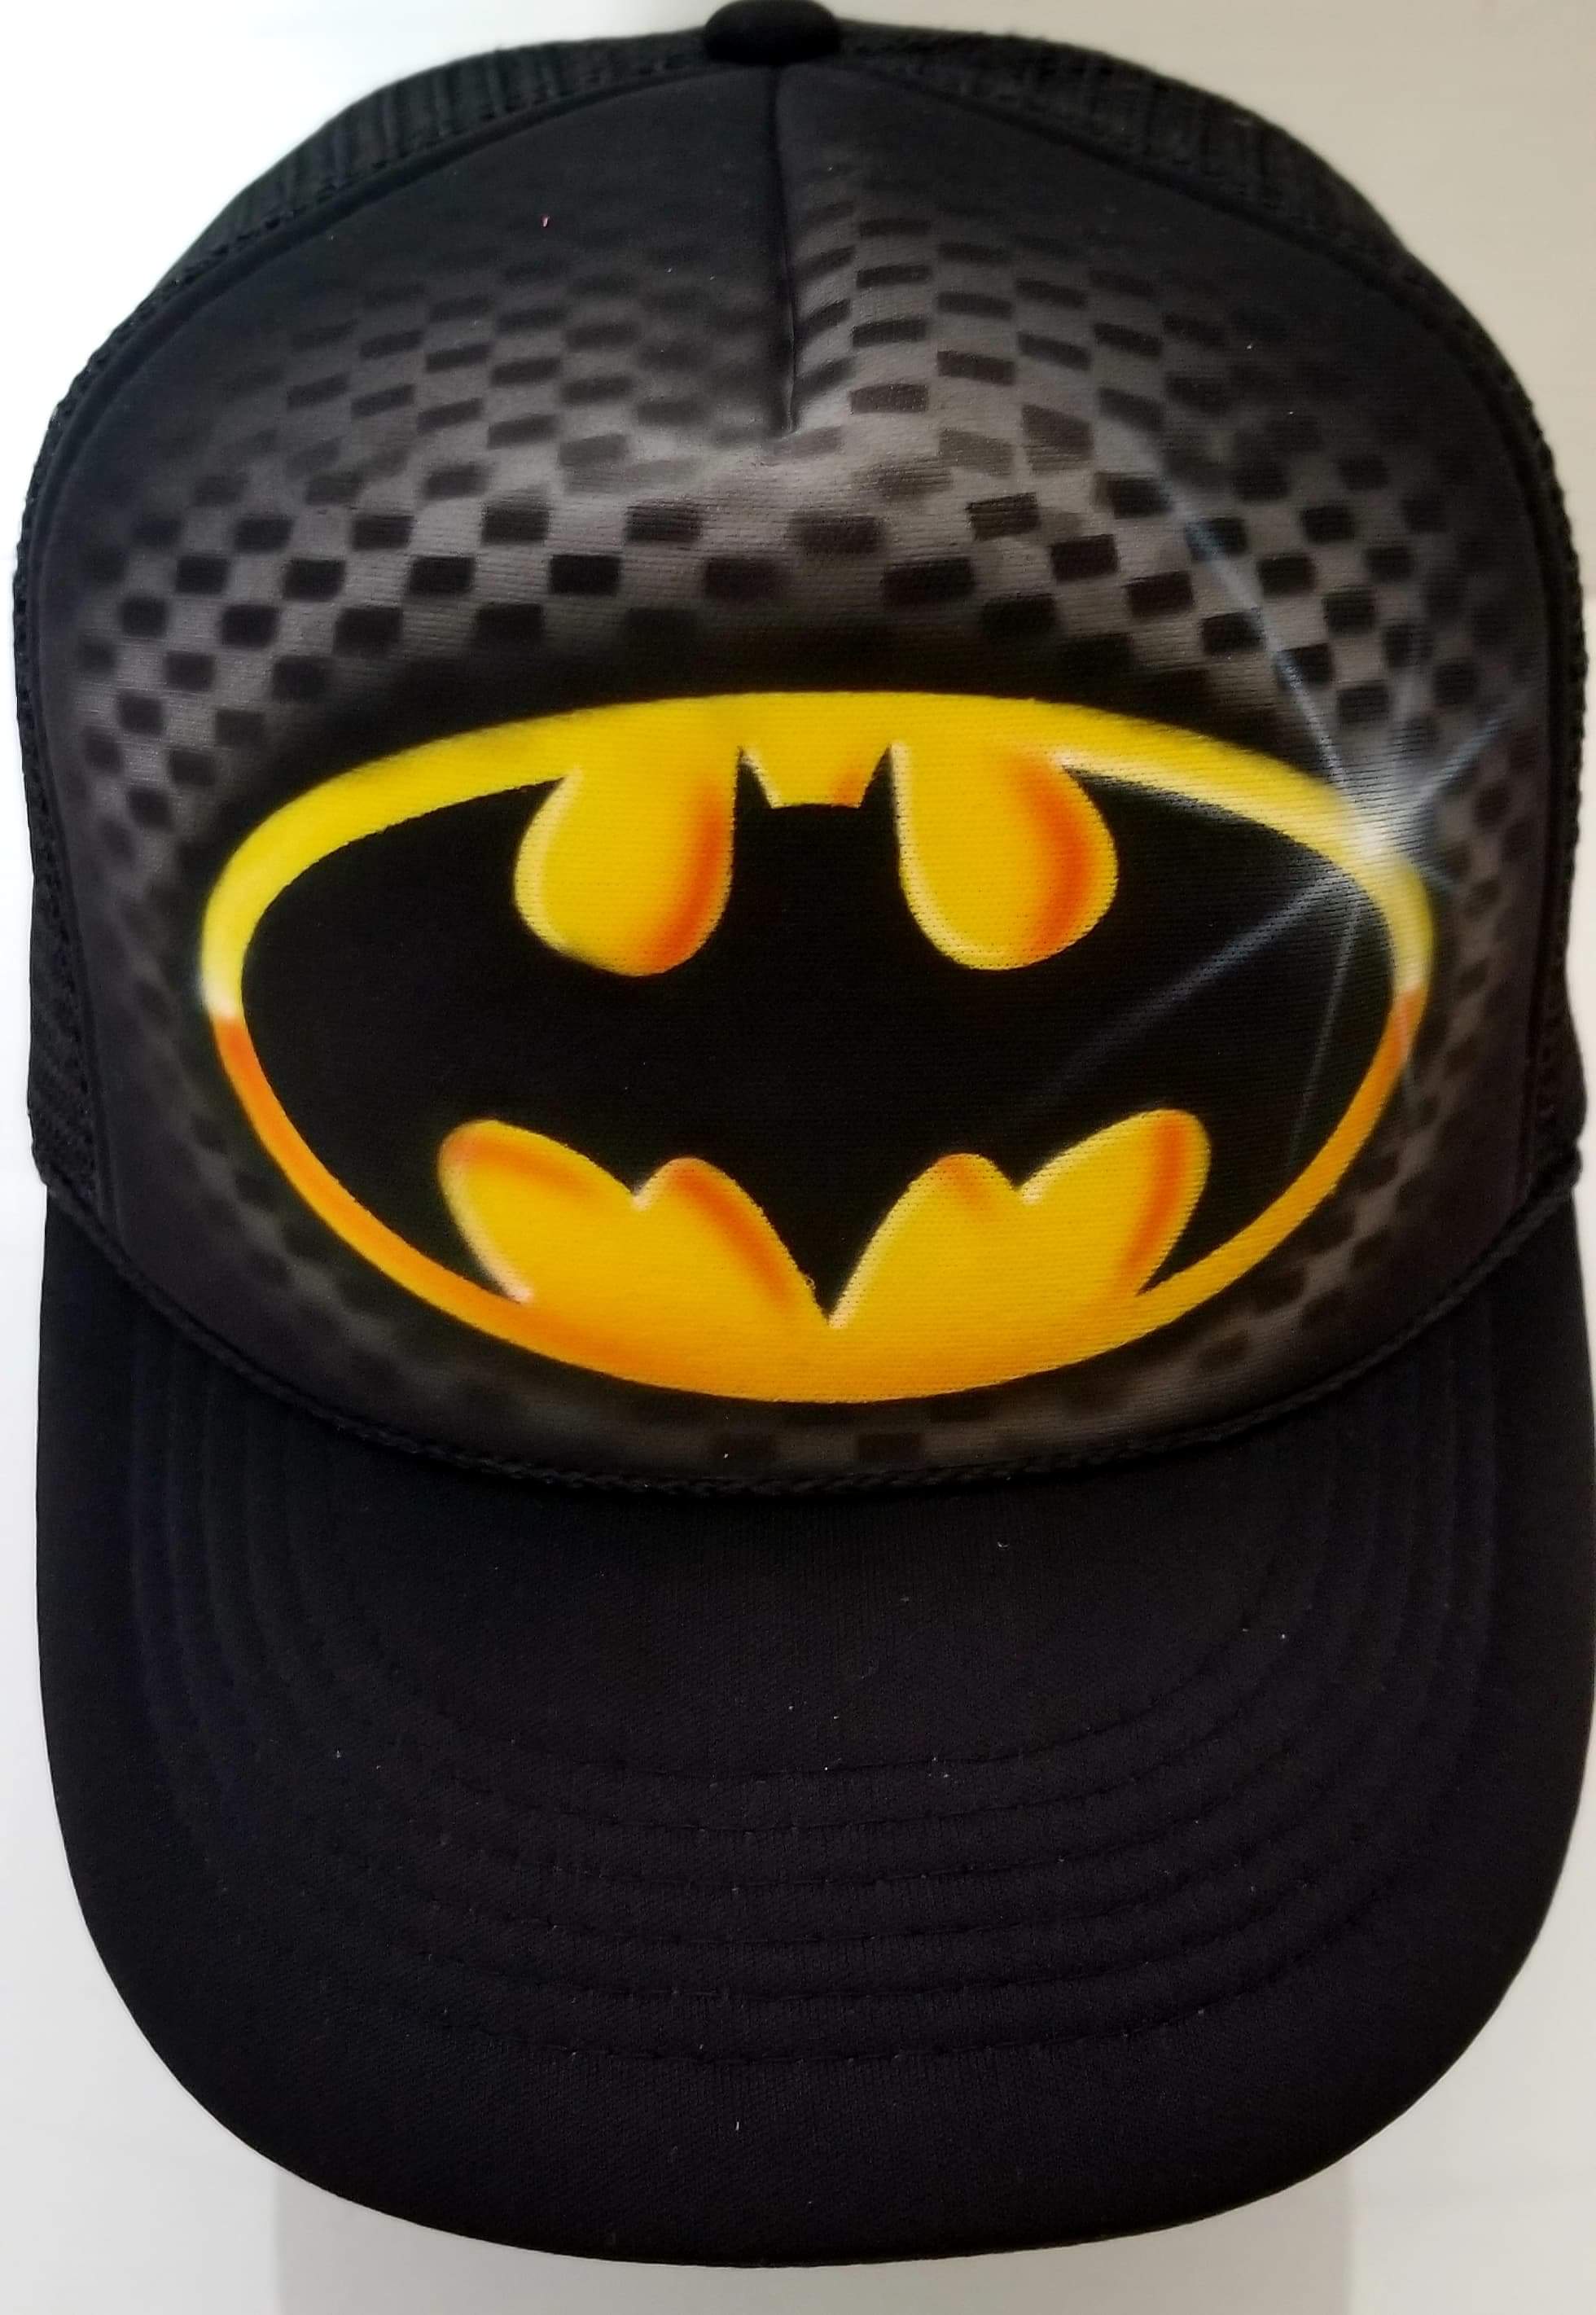 Hand Painted Batman Hat